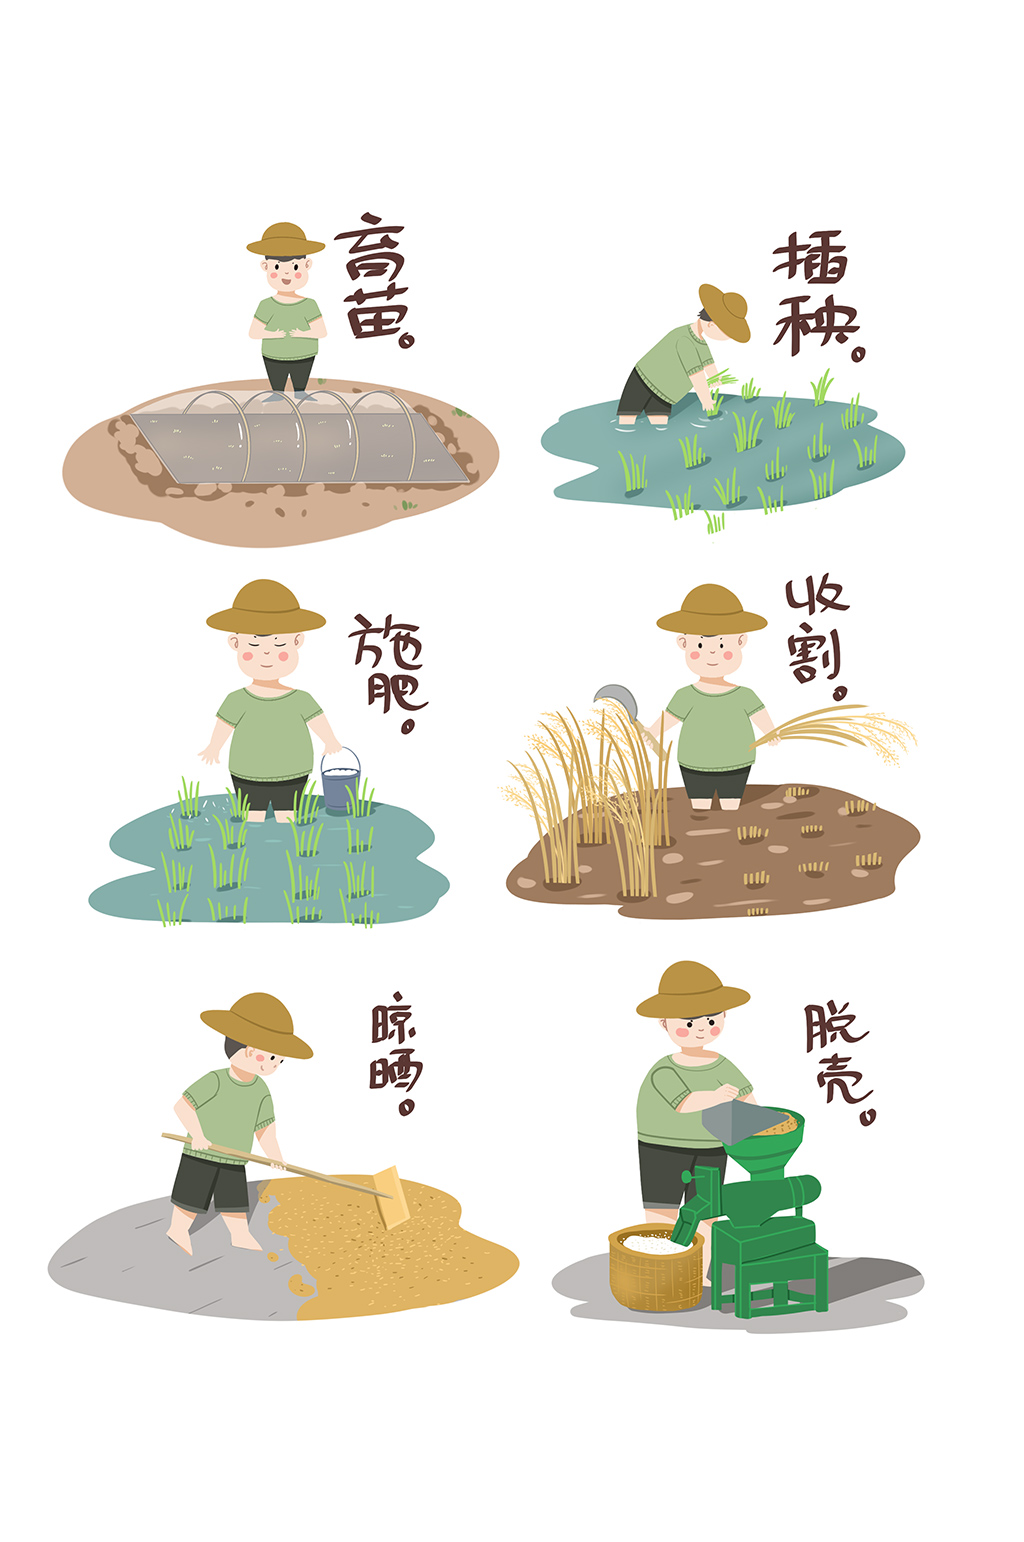 水稻种植过程6步 步骤图片